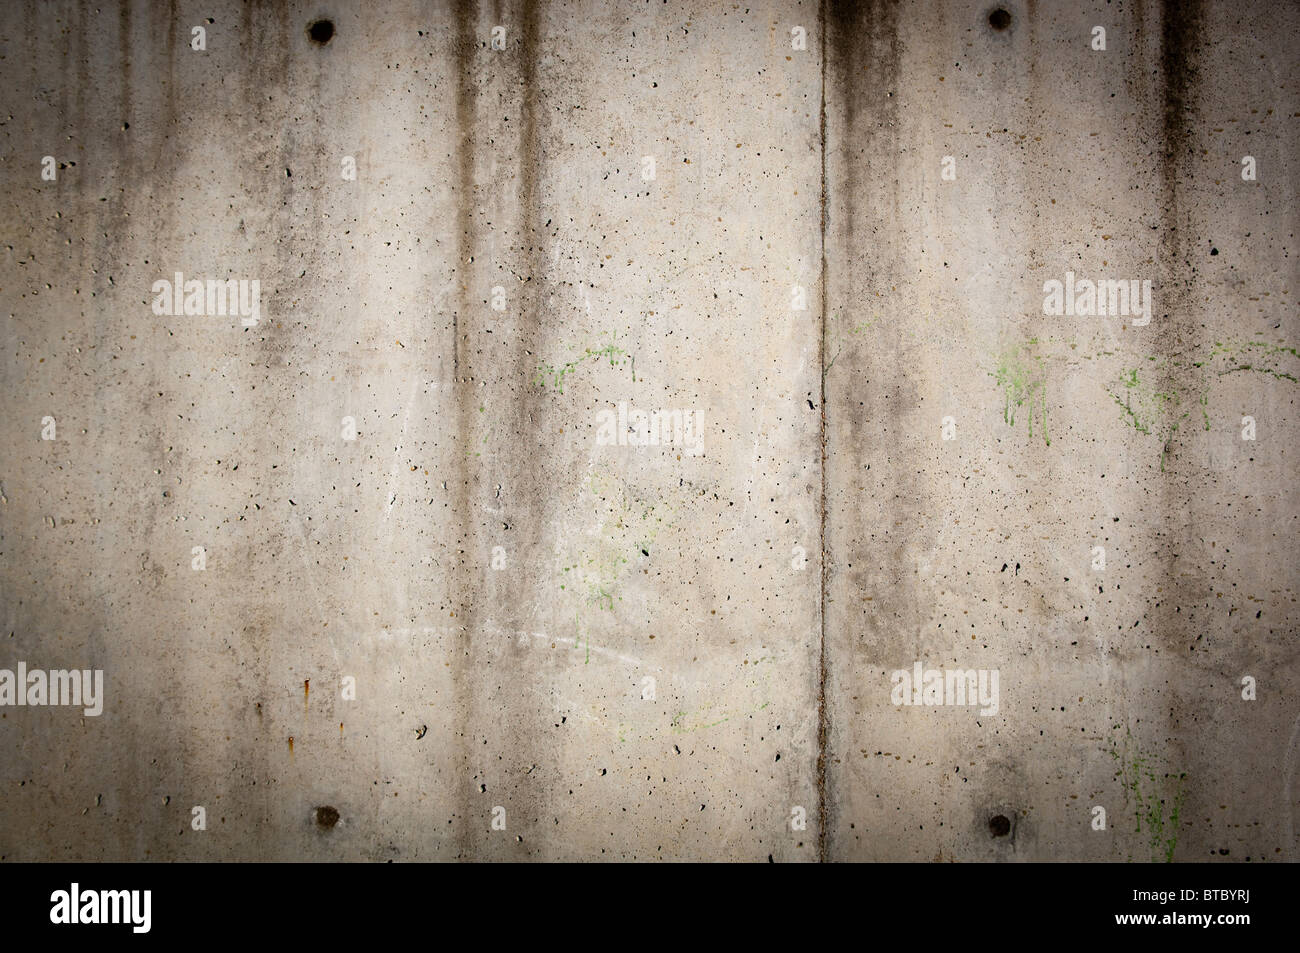 Alto muro de hormigón en áspero, gunge estilo con las manchas y el desgaste Foto de stock